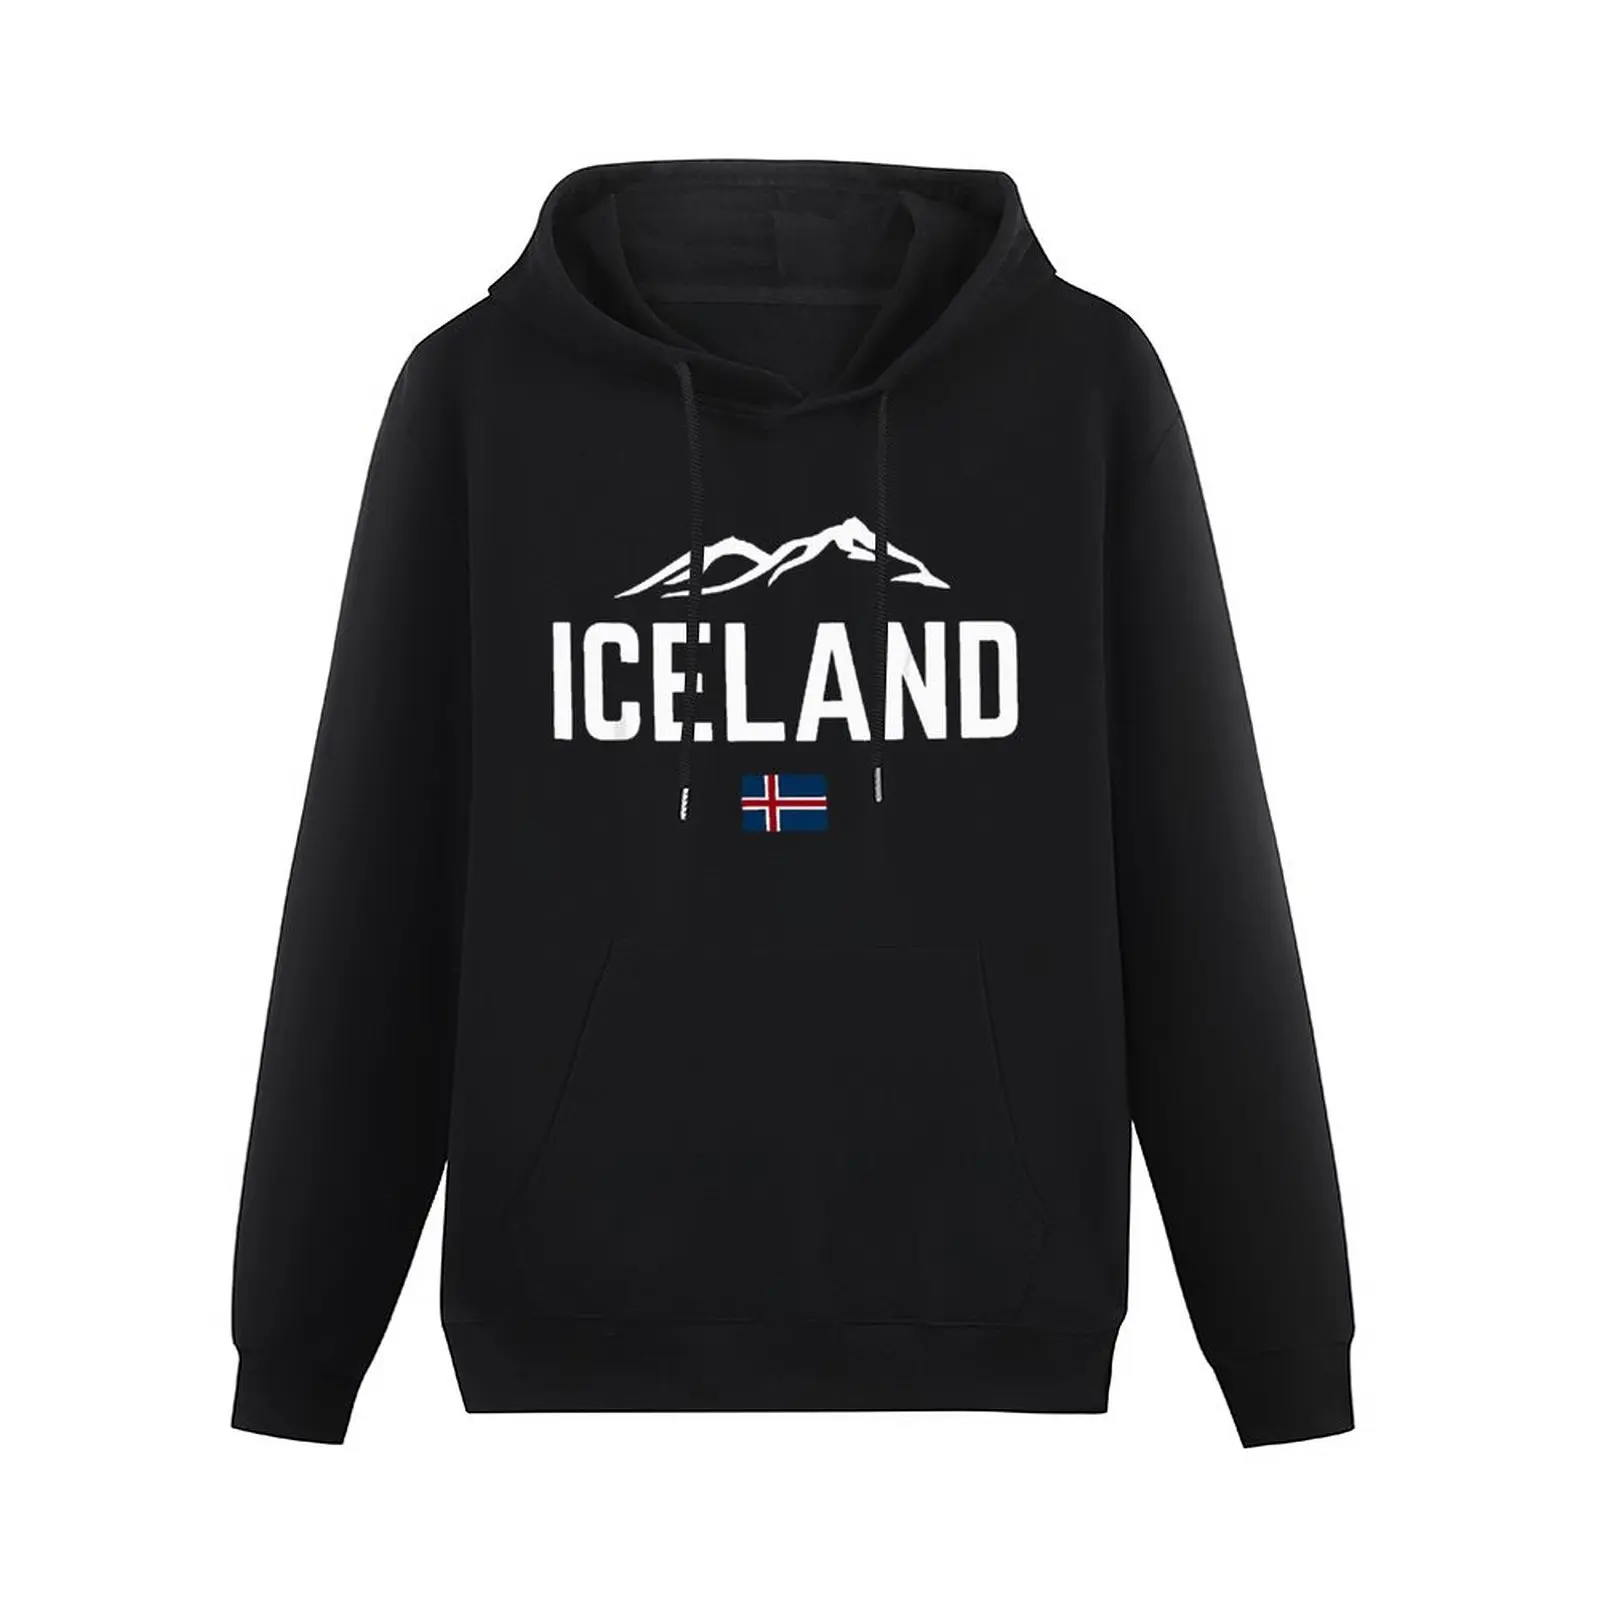 

Толстовка унисекс с капюшоном, хлопок, кофта с принтом флага Исландии, карта страны, пуловер в стиле хип-хоп